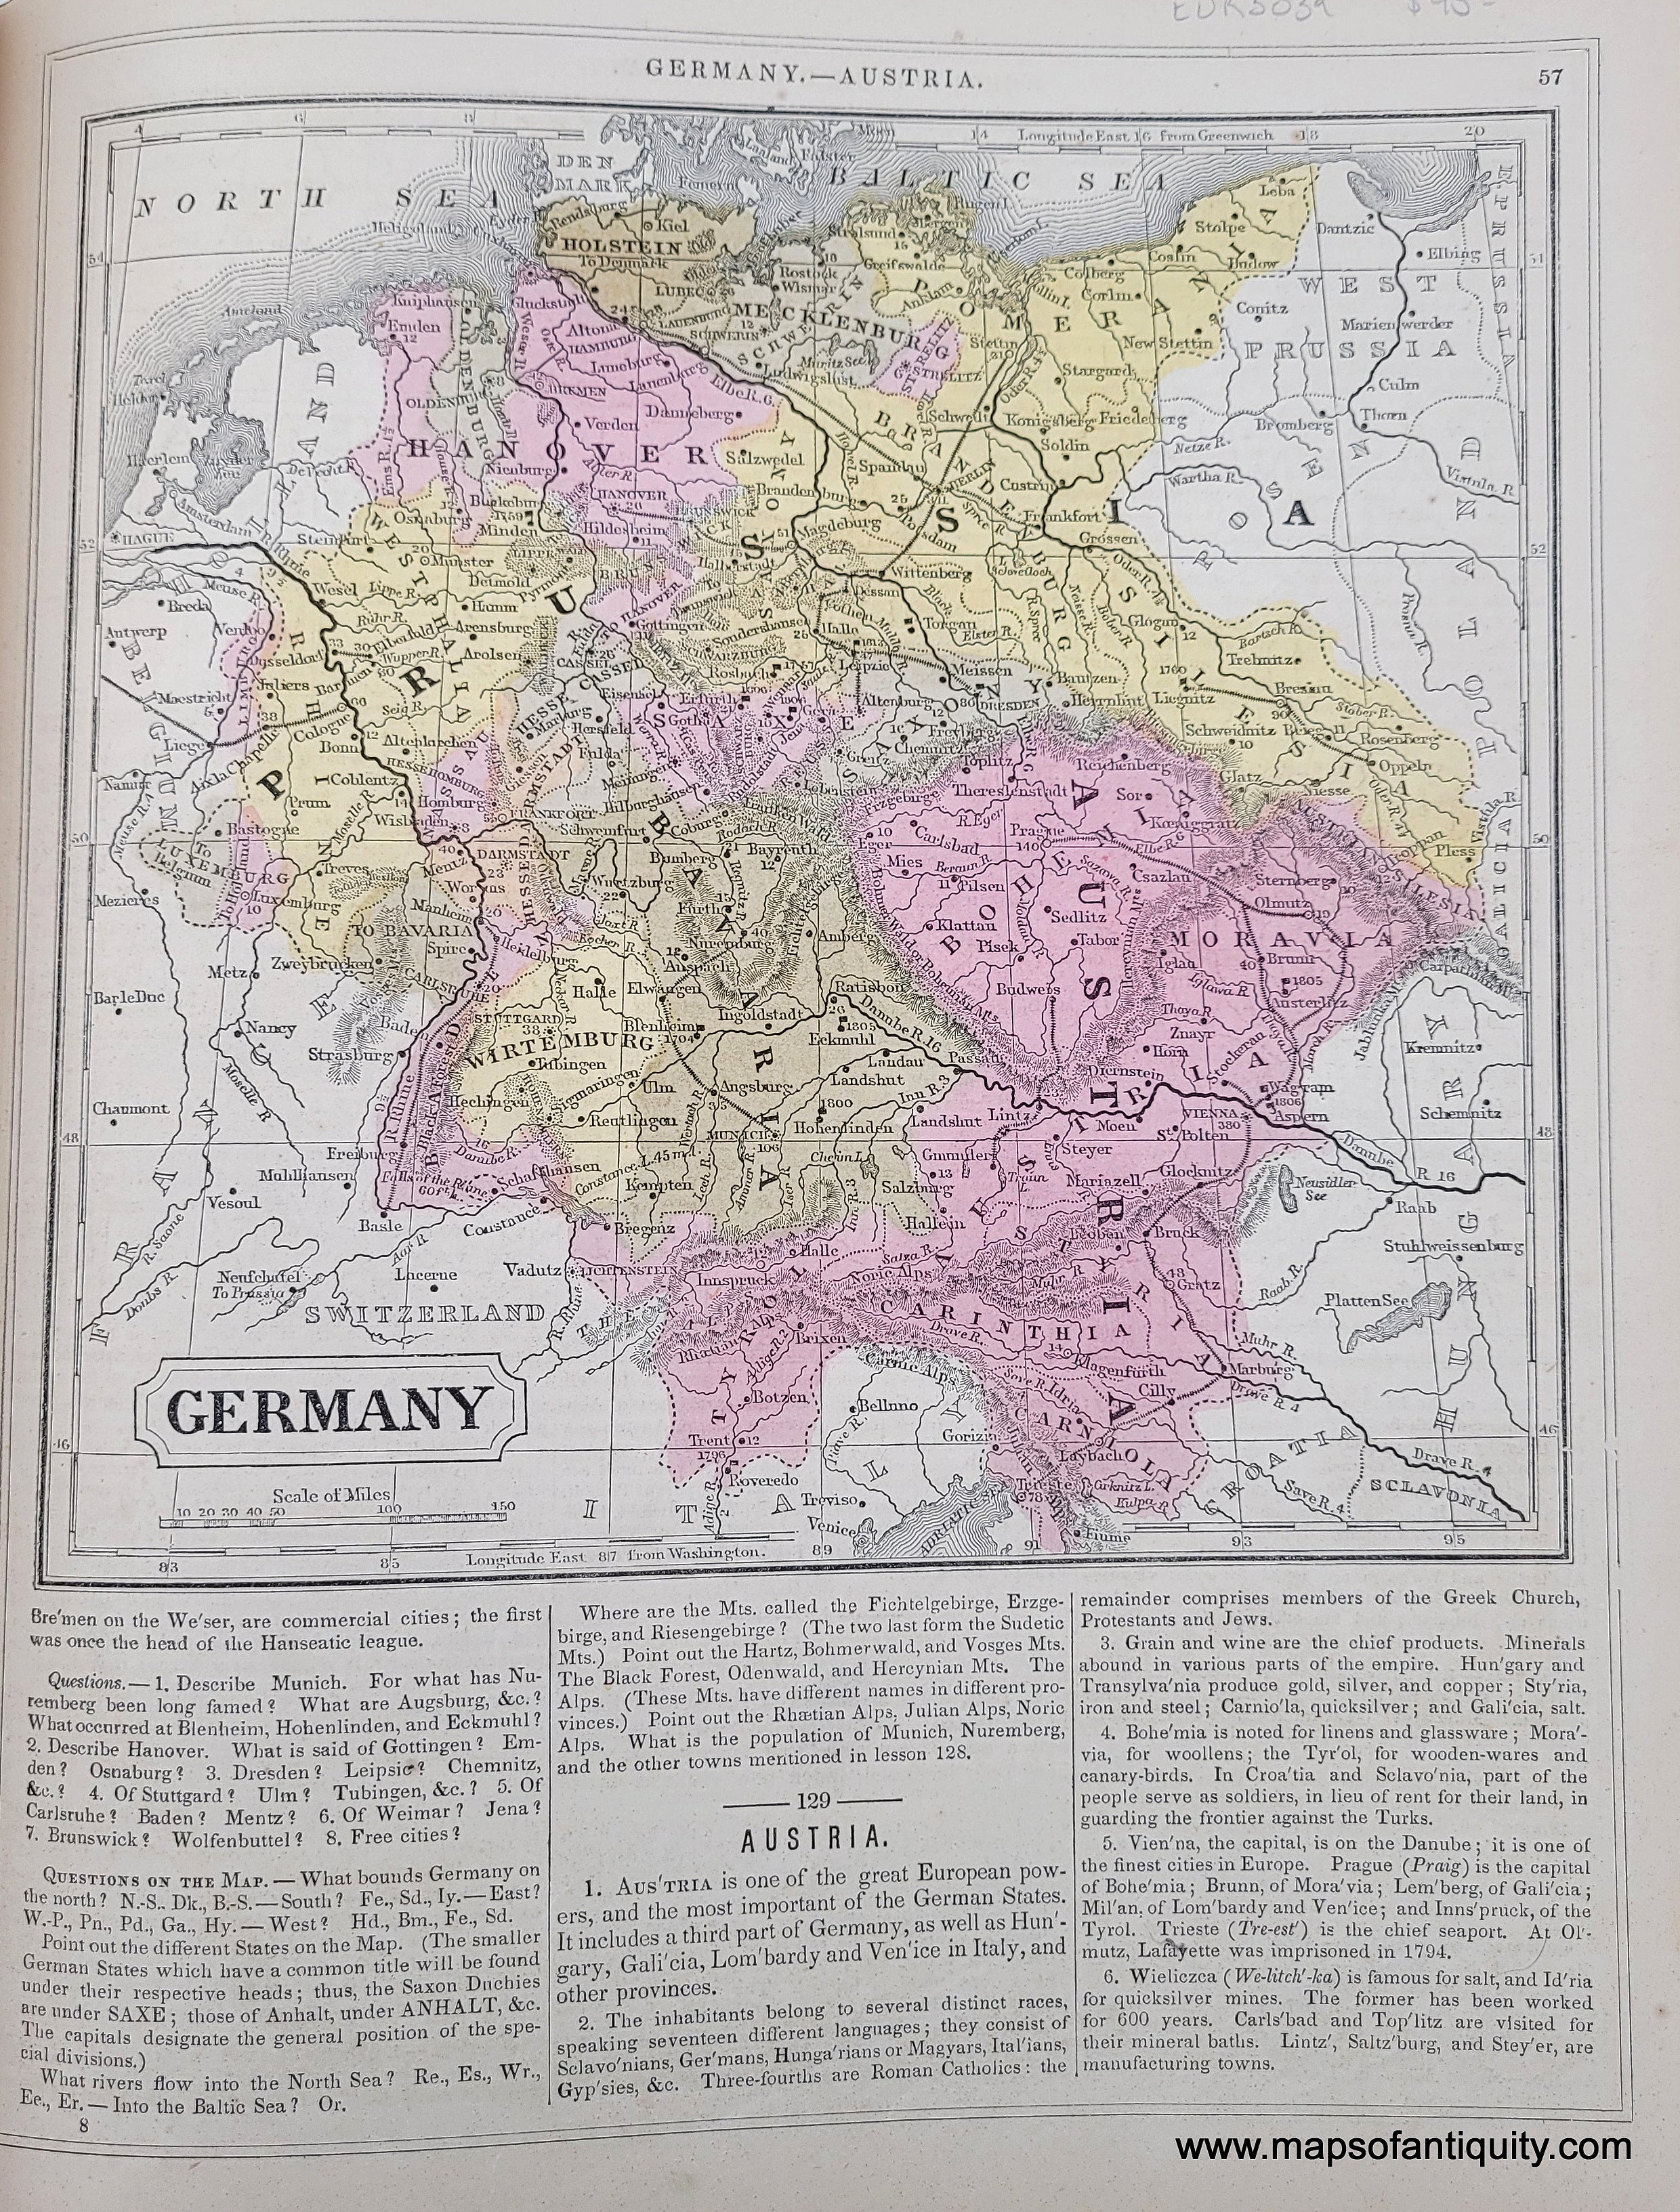 german states map 1850